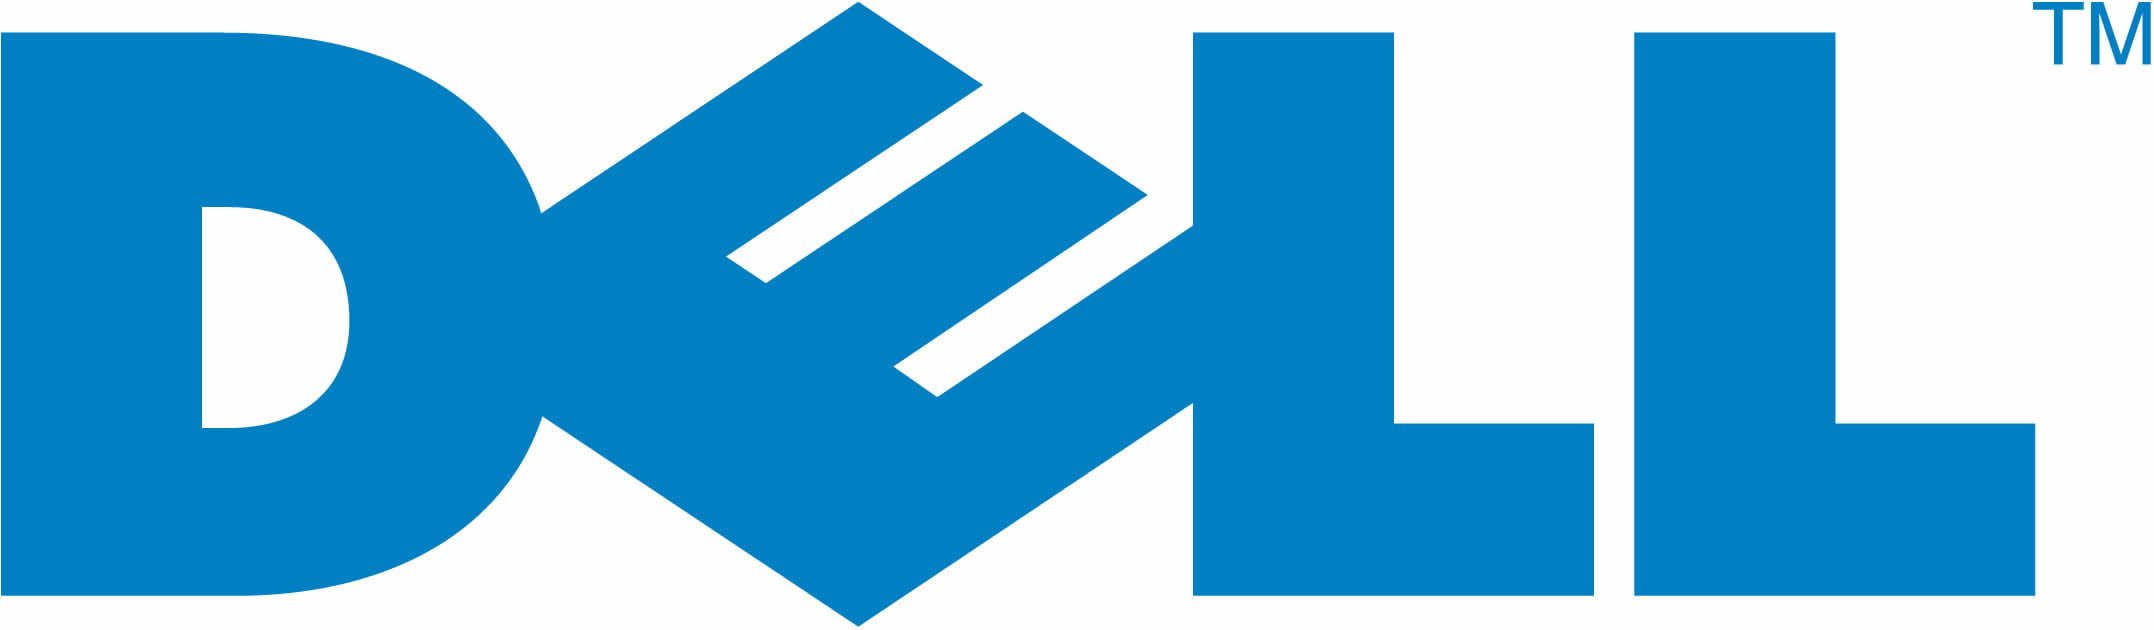 Logo Dell 2015